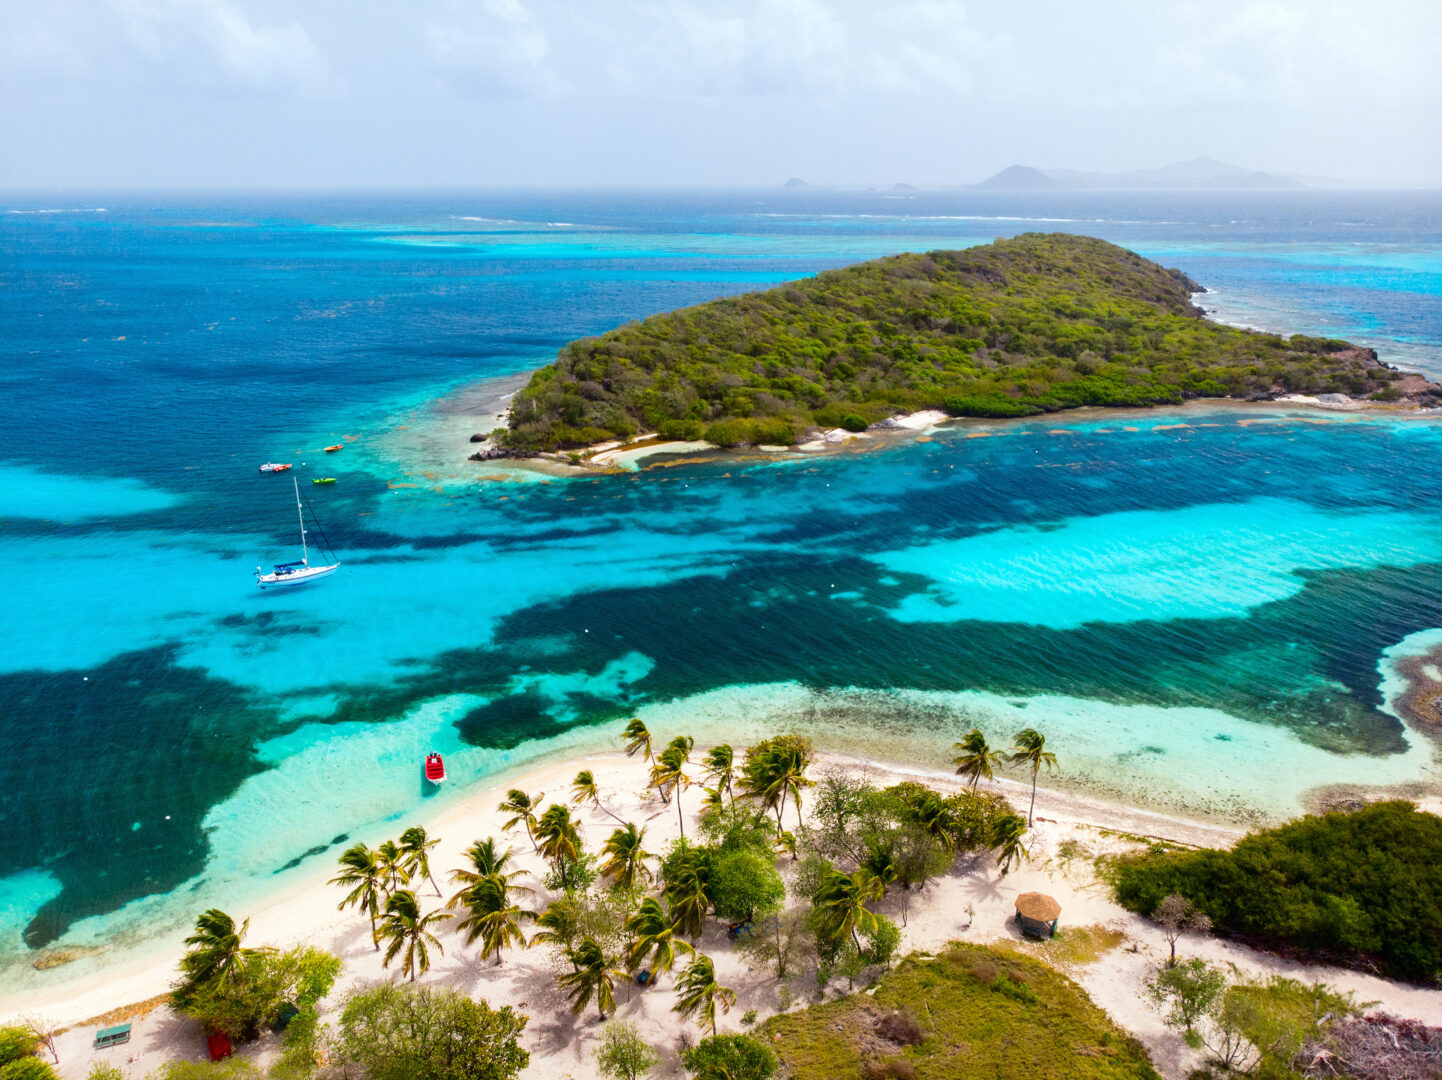 Vue aérienne de Tobago Cays de Saint-Vincent-et-les-Grenadines, croisière dans les Caraïbes